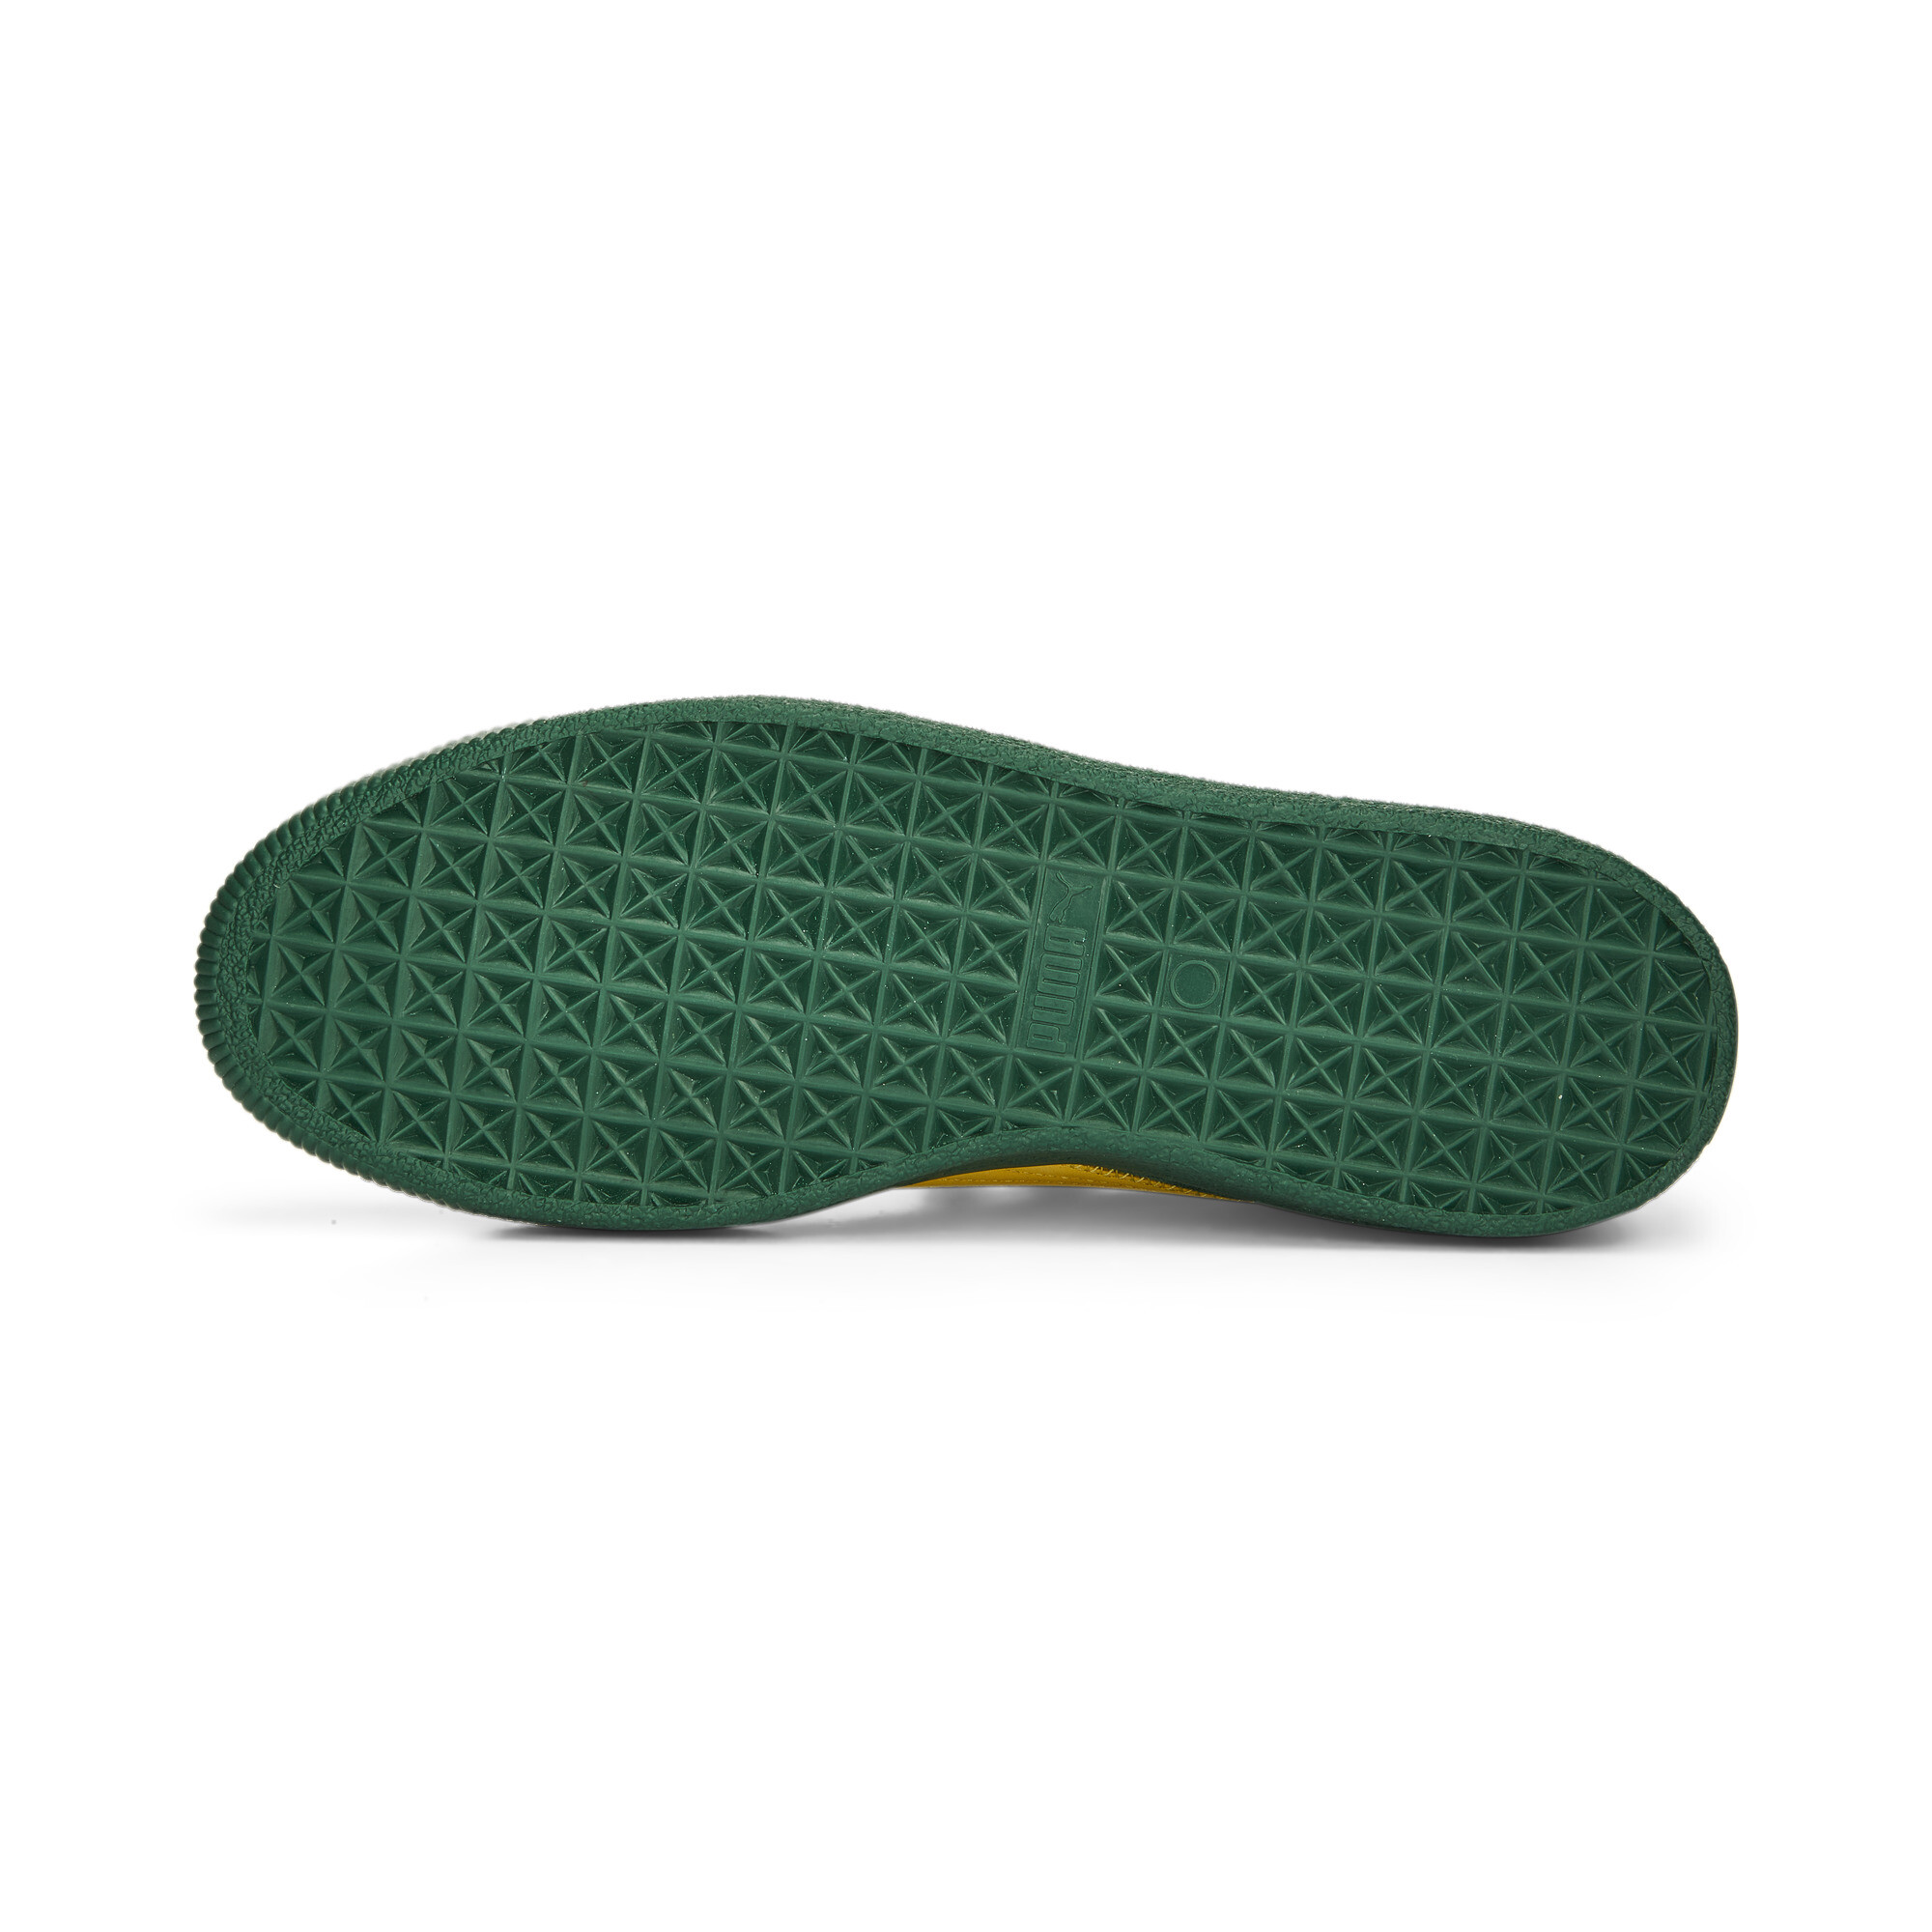 Men's Clyde Super PUMA Sneakers In 40 - Green, Size EU 43